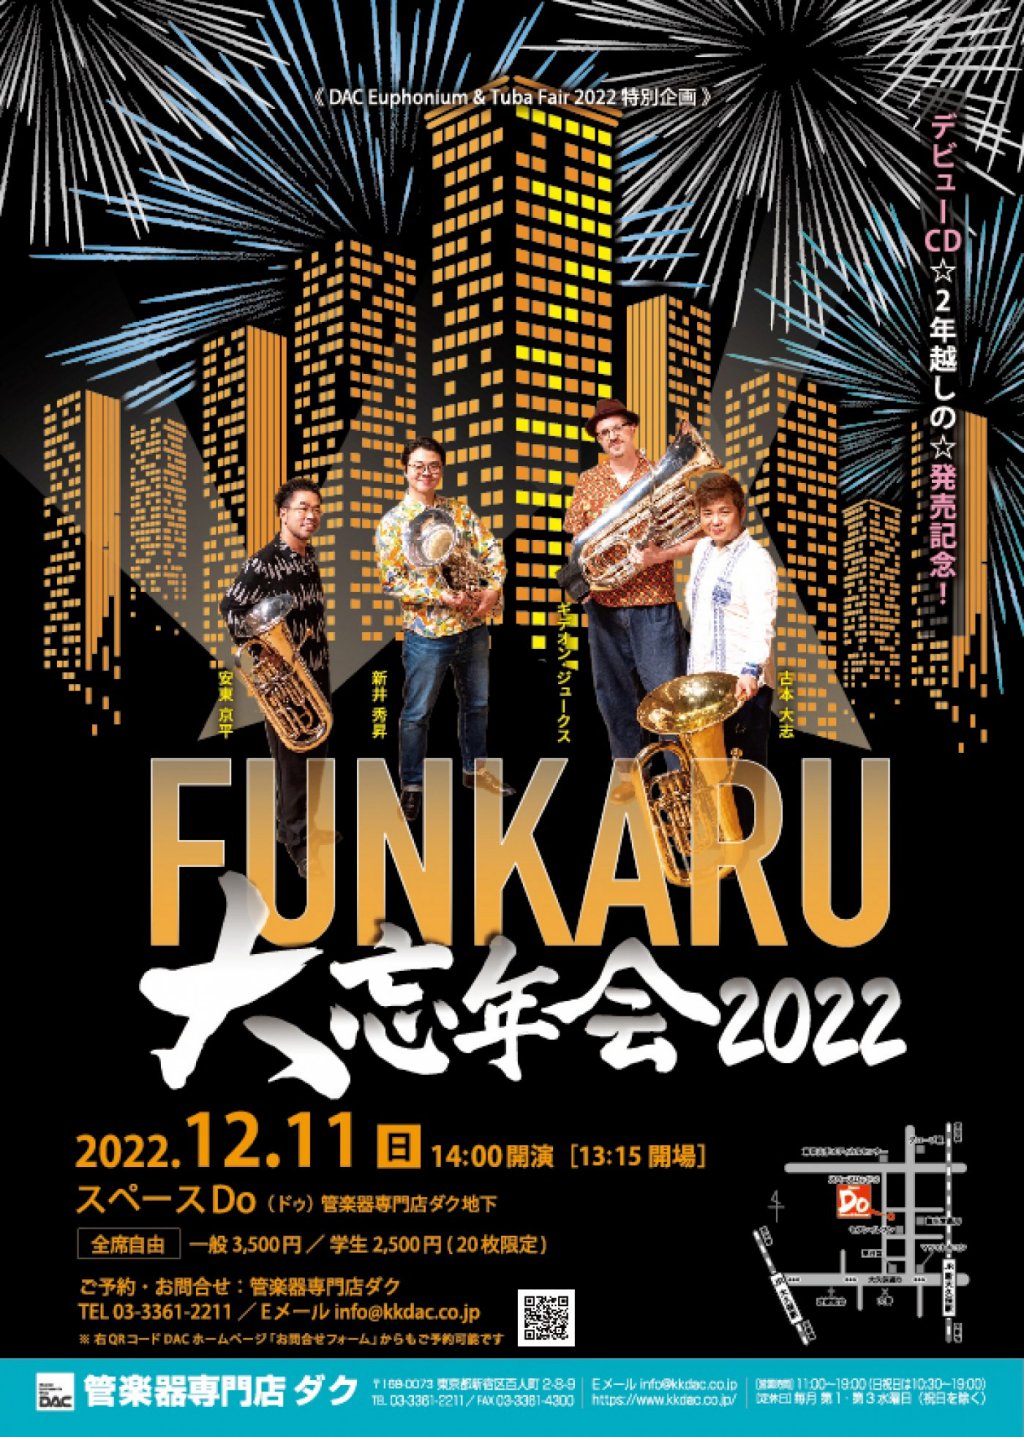 《 DAC Euphonium & Tuba Fair 2022 特別企画 》FUNKARU 大忘年会2022